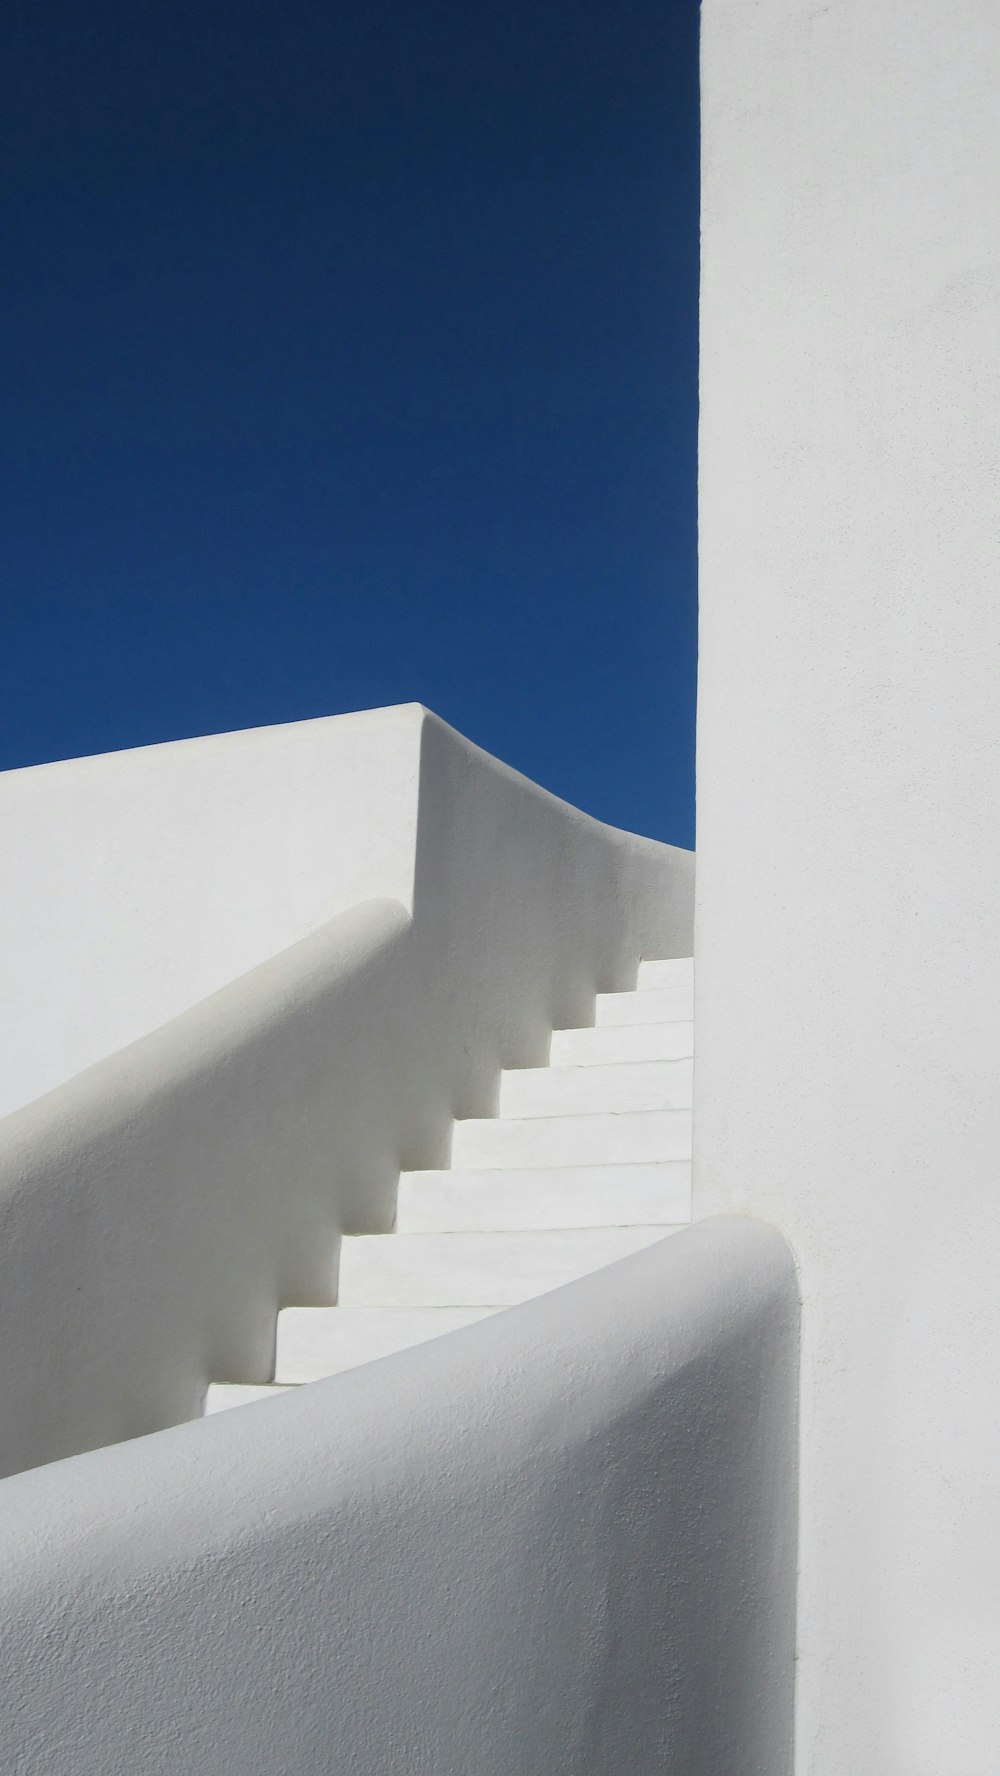 Escalier en béton blanc sous le ciel bleu pendant la journée